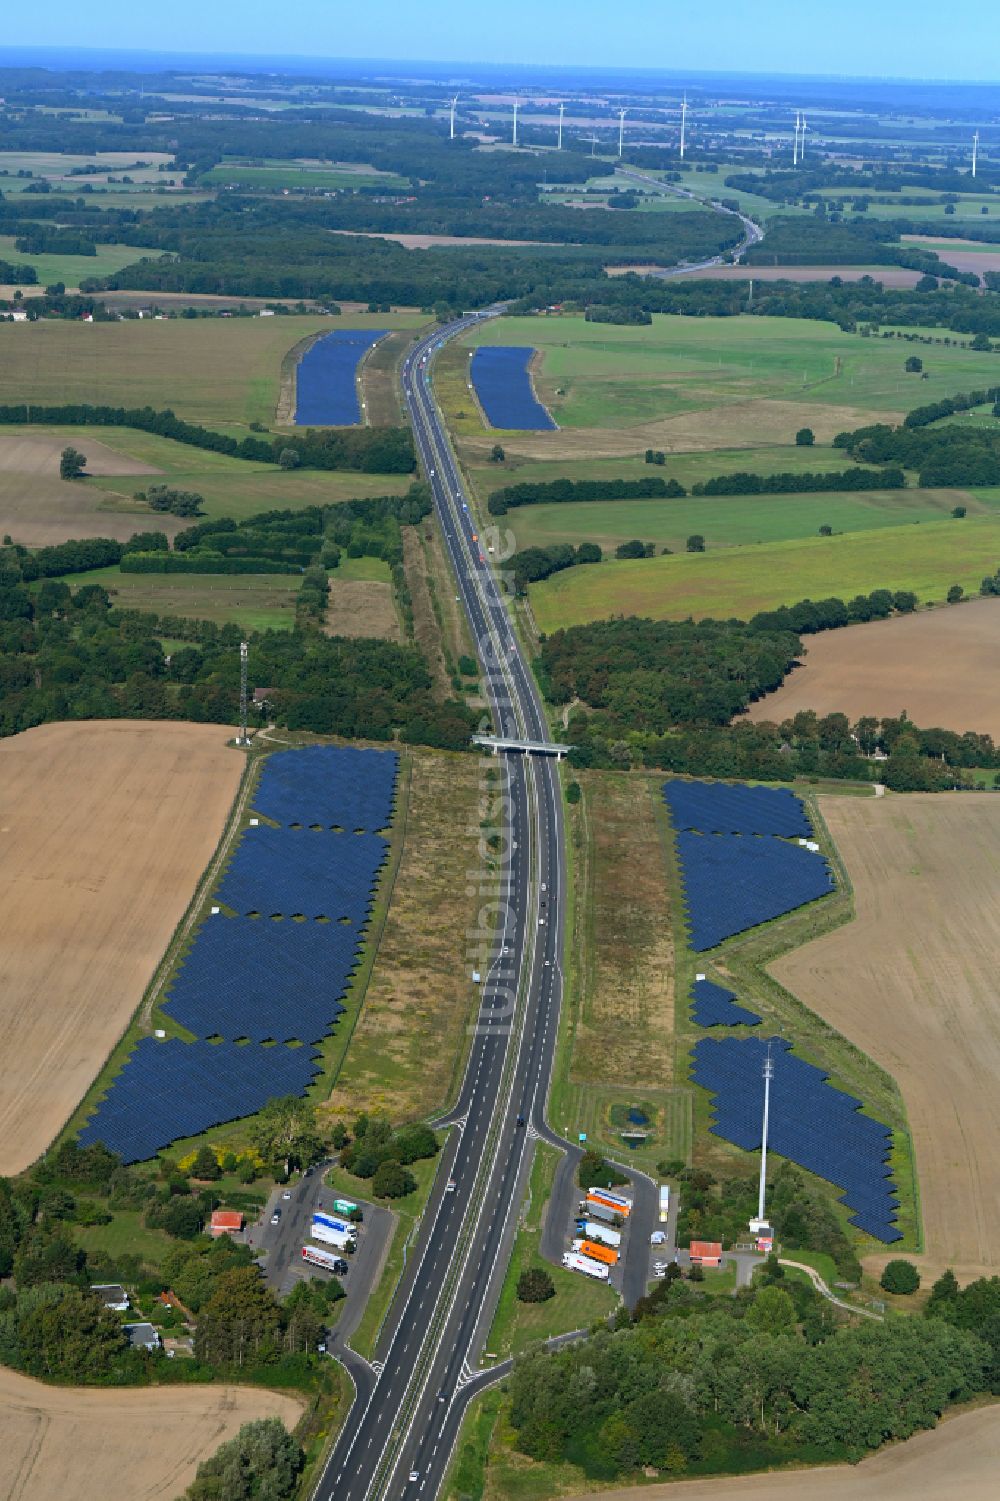 Luftbild Silmersdorf - Solarkraftwerk am Rande des Autobahn- Trasse und Streckenverlauf der BAB A24 in Silmersdorf im Bundesland Brandenburg, Deutschland